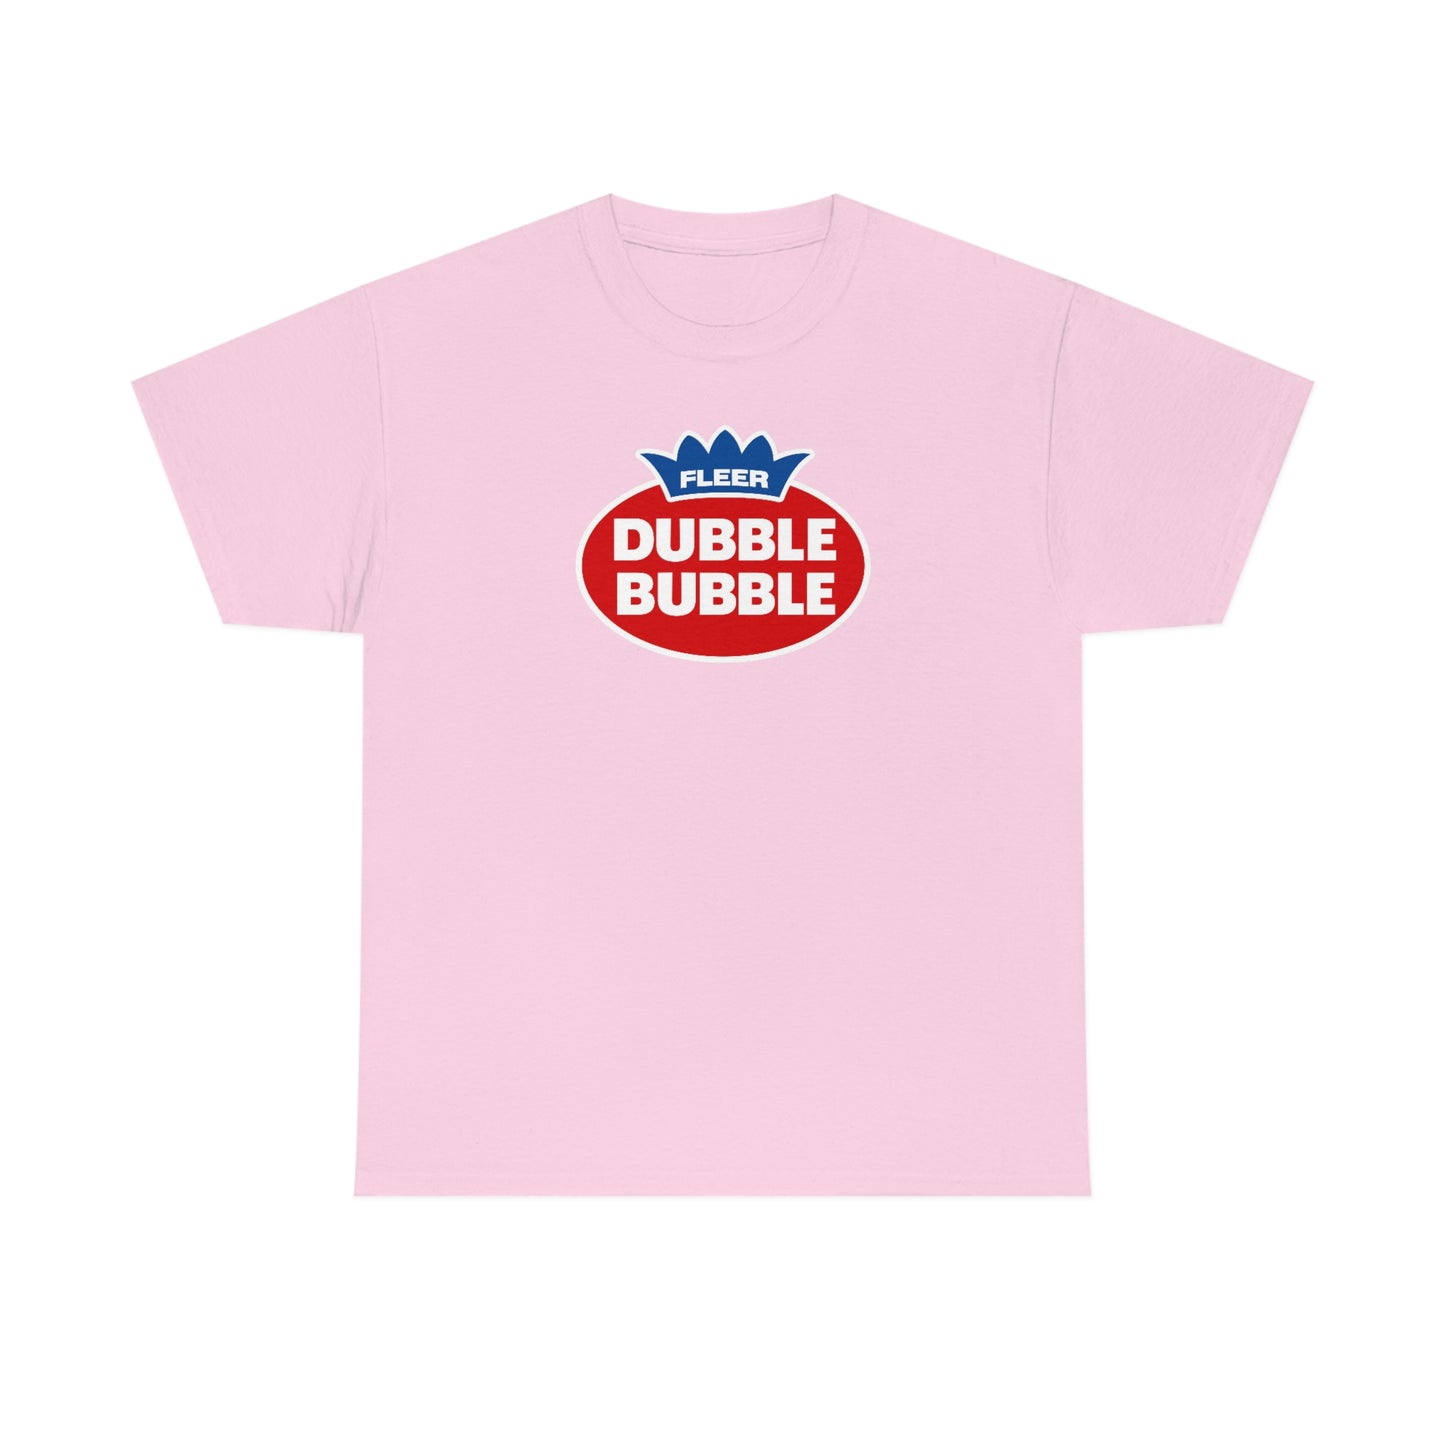 Dubble Bubble T-Shirt